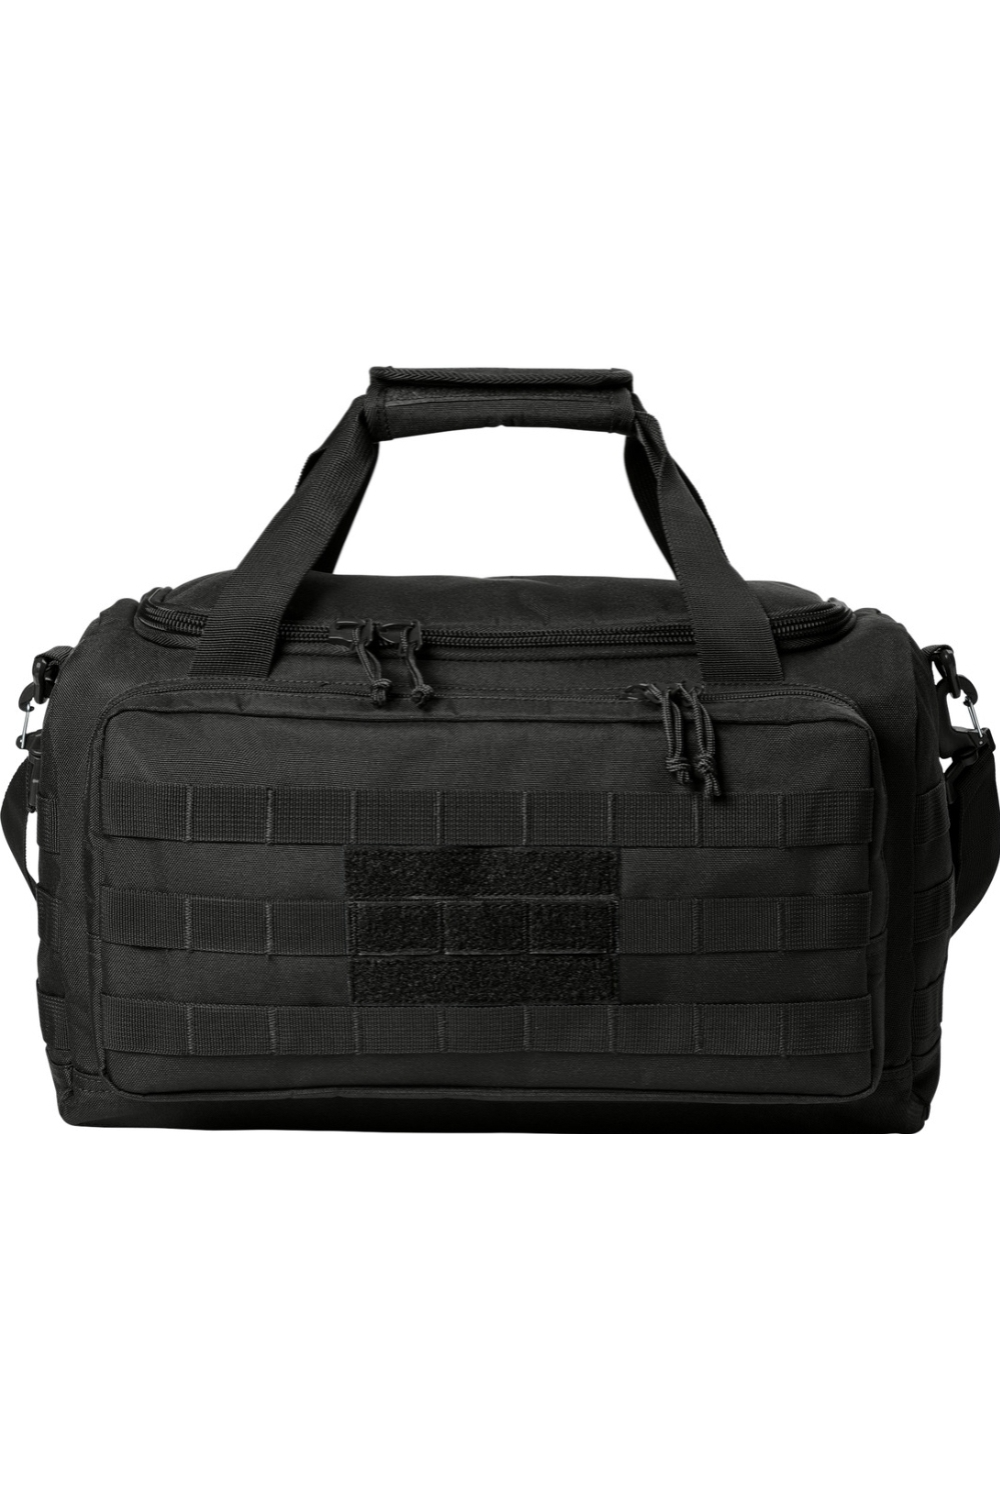 FA Tactical Gear Bag